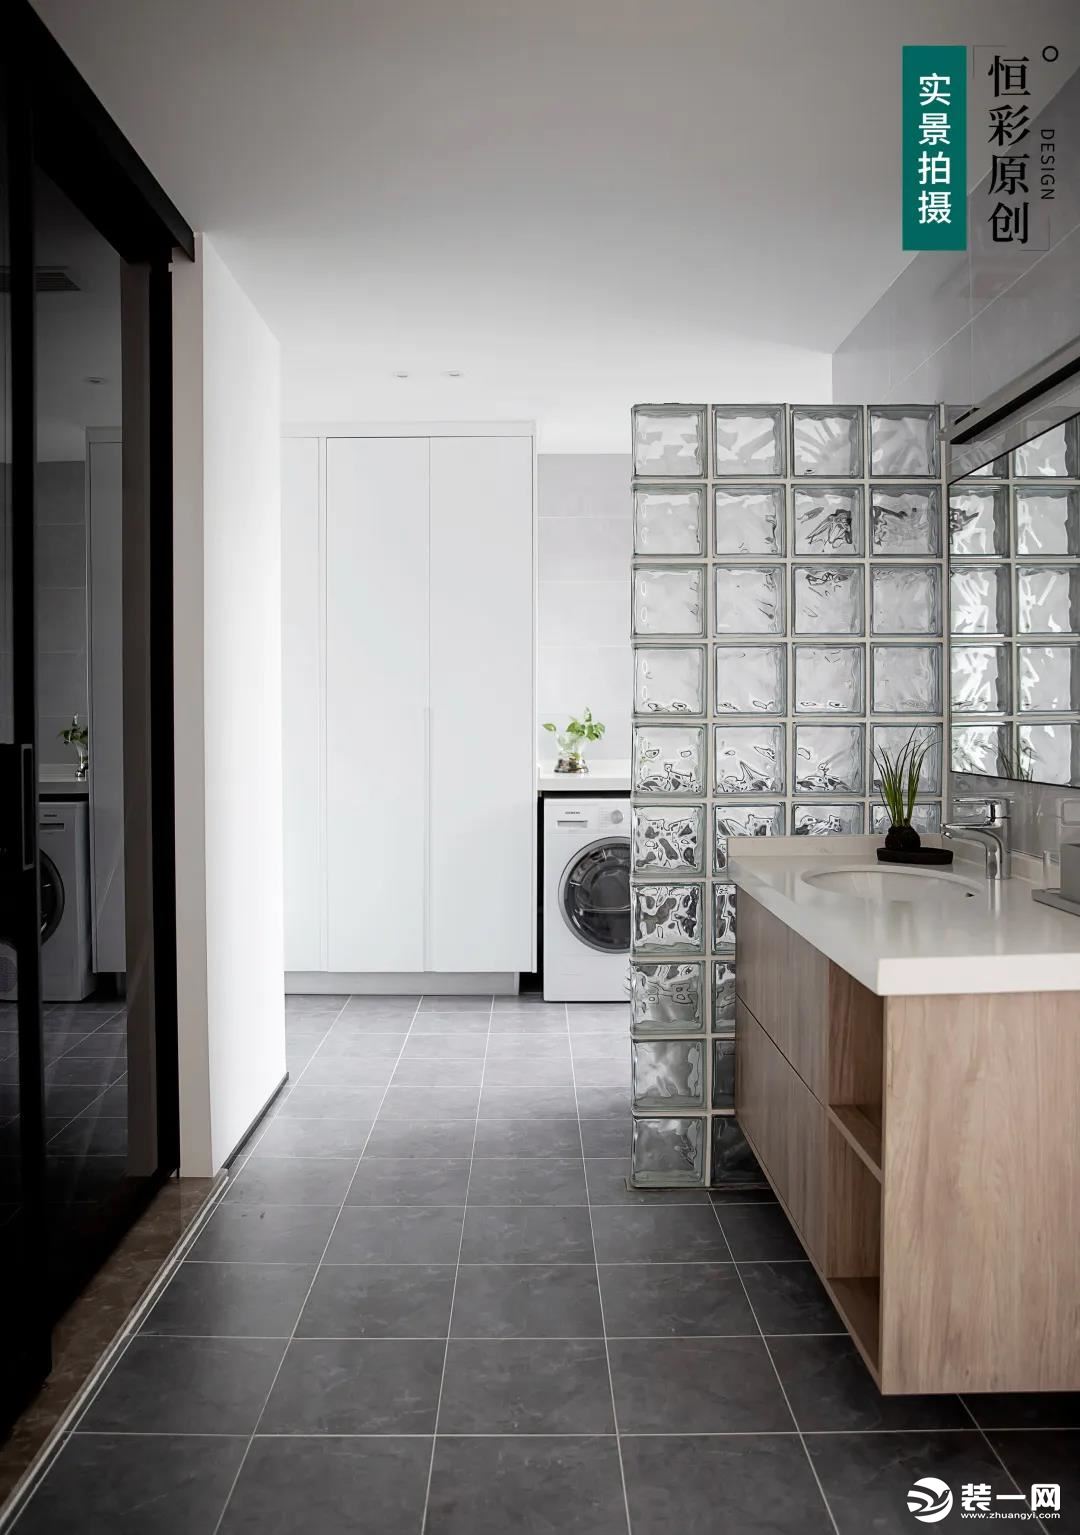 利用玻璃砖作为隔断，既保护了淋浴房区域的空间私密性，又不会显得空间过于封闭。